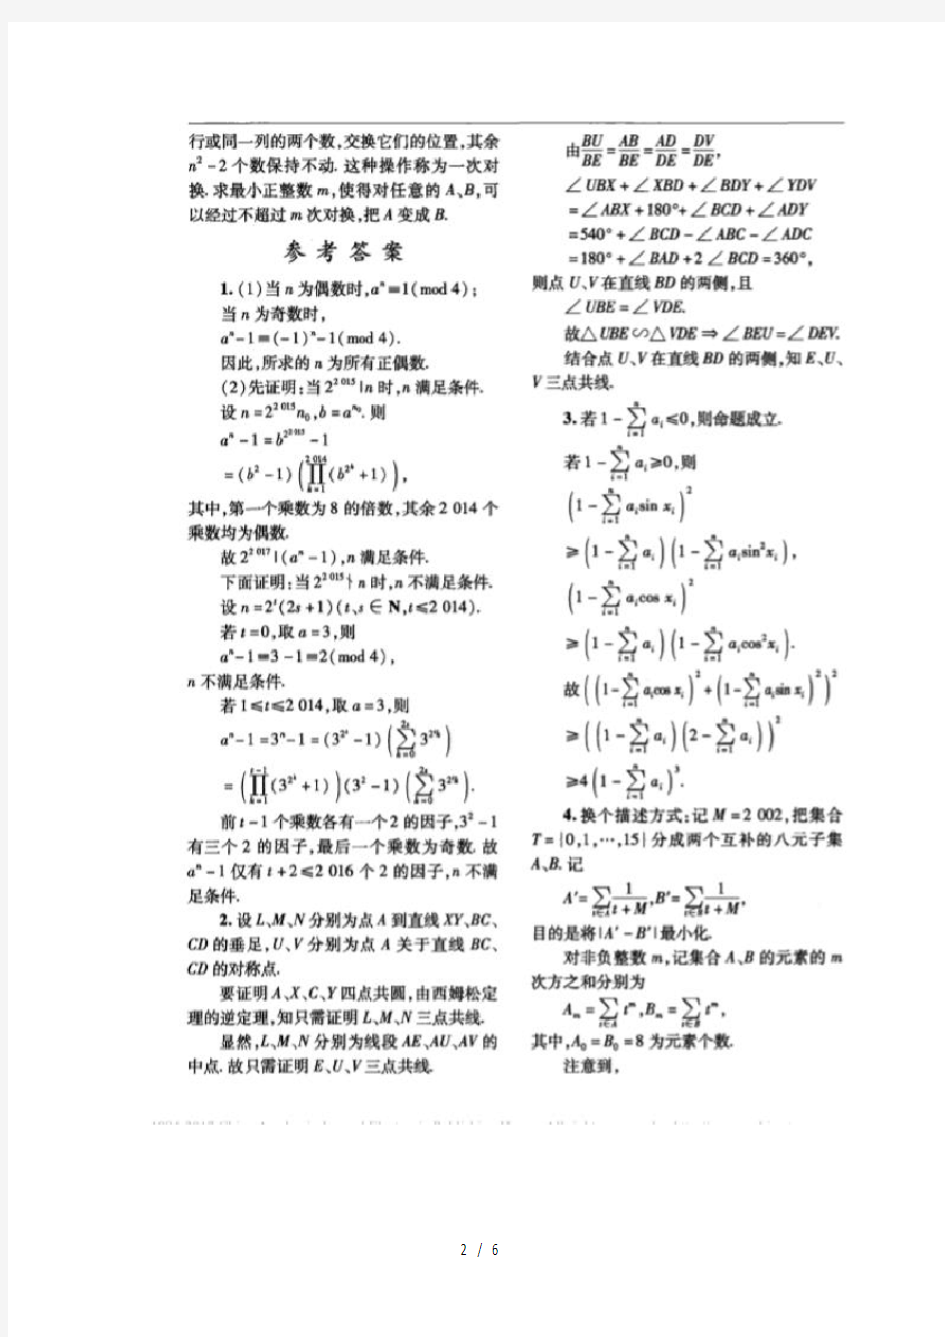 2017年中国女子数学奥林匹克试题(图片版)